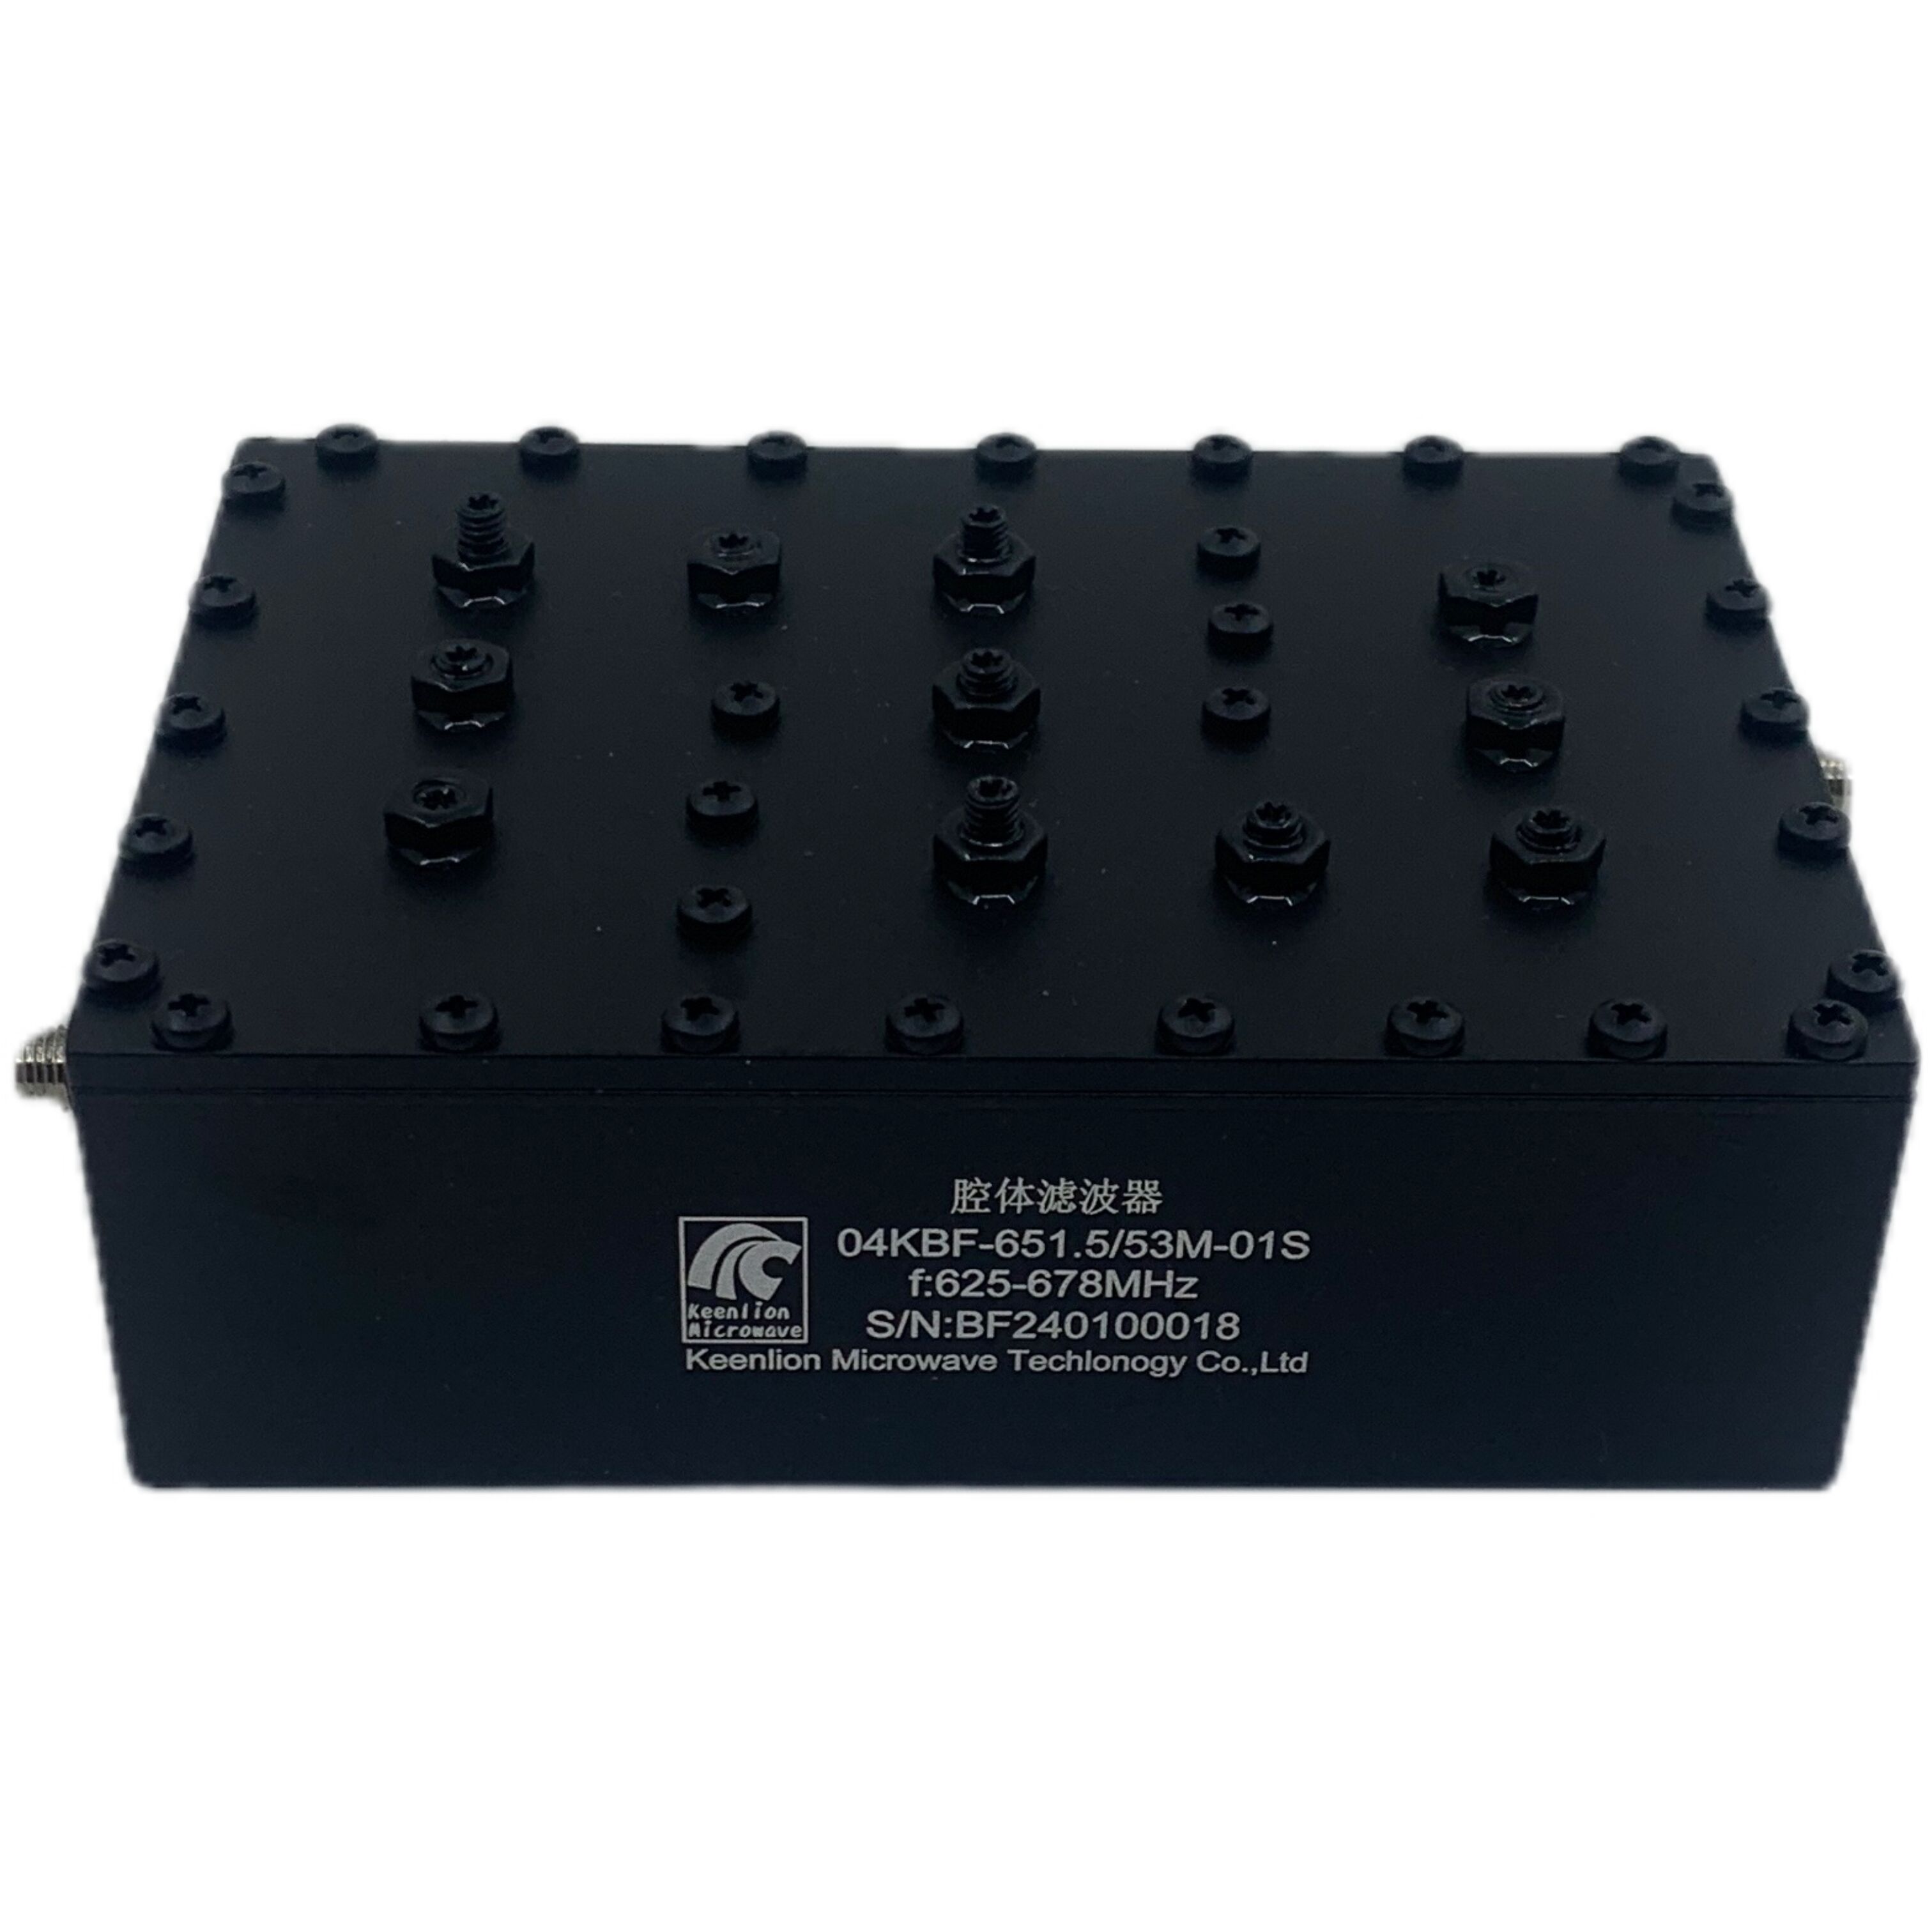 625-678MHz Customized RF Cavity Filter Band Pass Filter Manufacturer Price